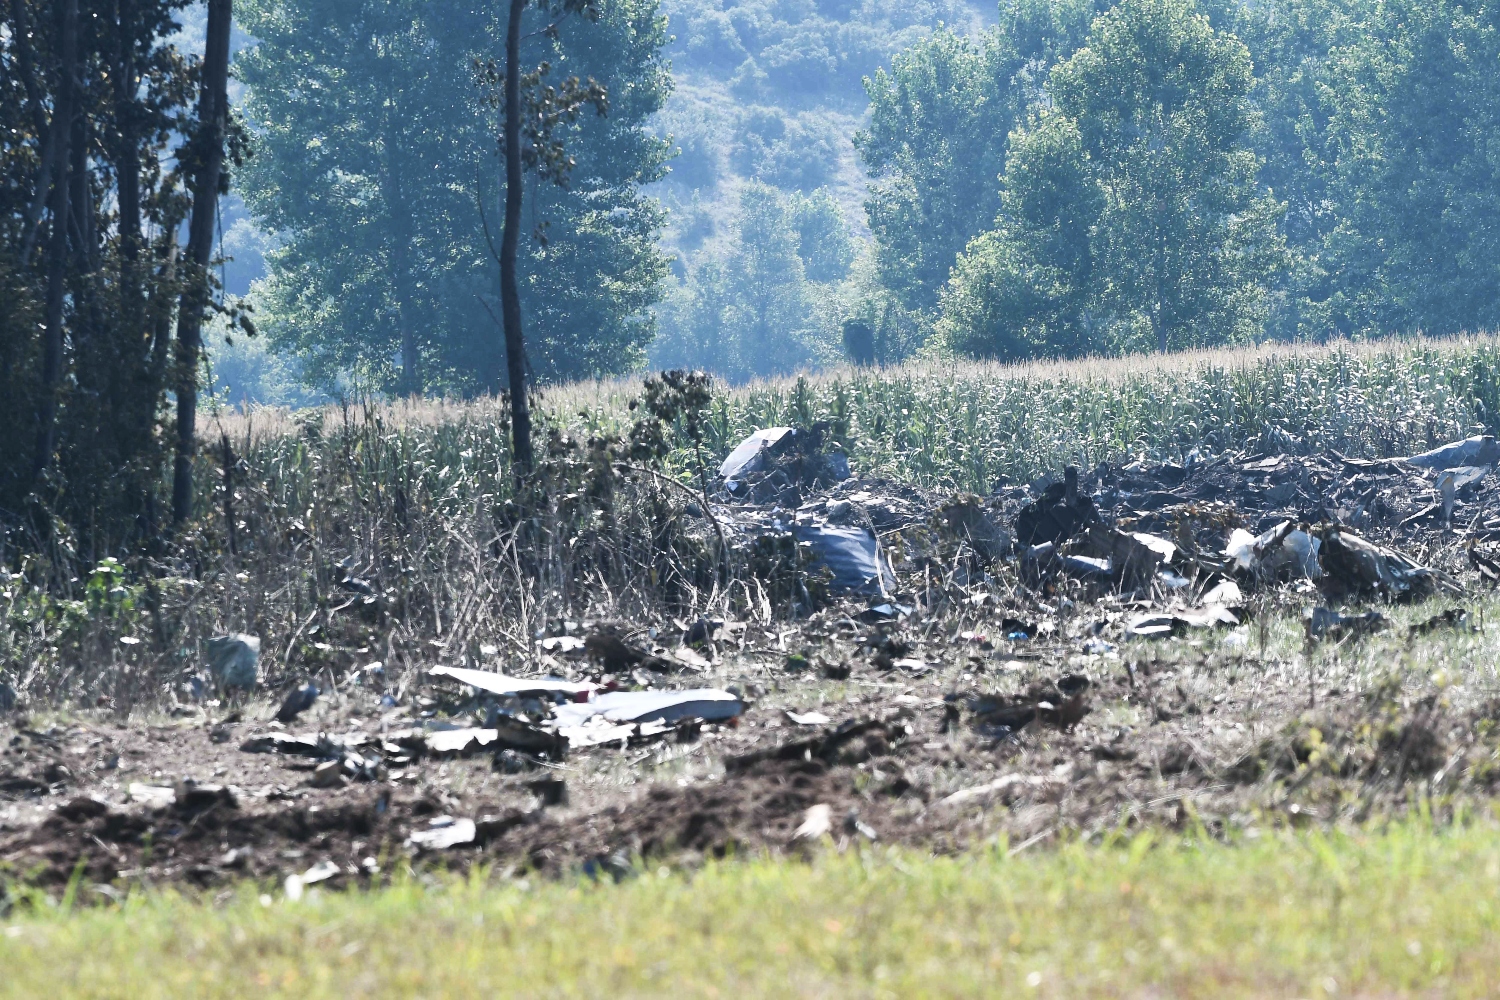 Πτώση Antonov: Νεκρά όλα τα μέλη του πληρώματος σύμφωνα με την εταιρία – Αποκλεισμένη η περιοχή